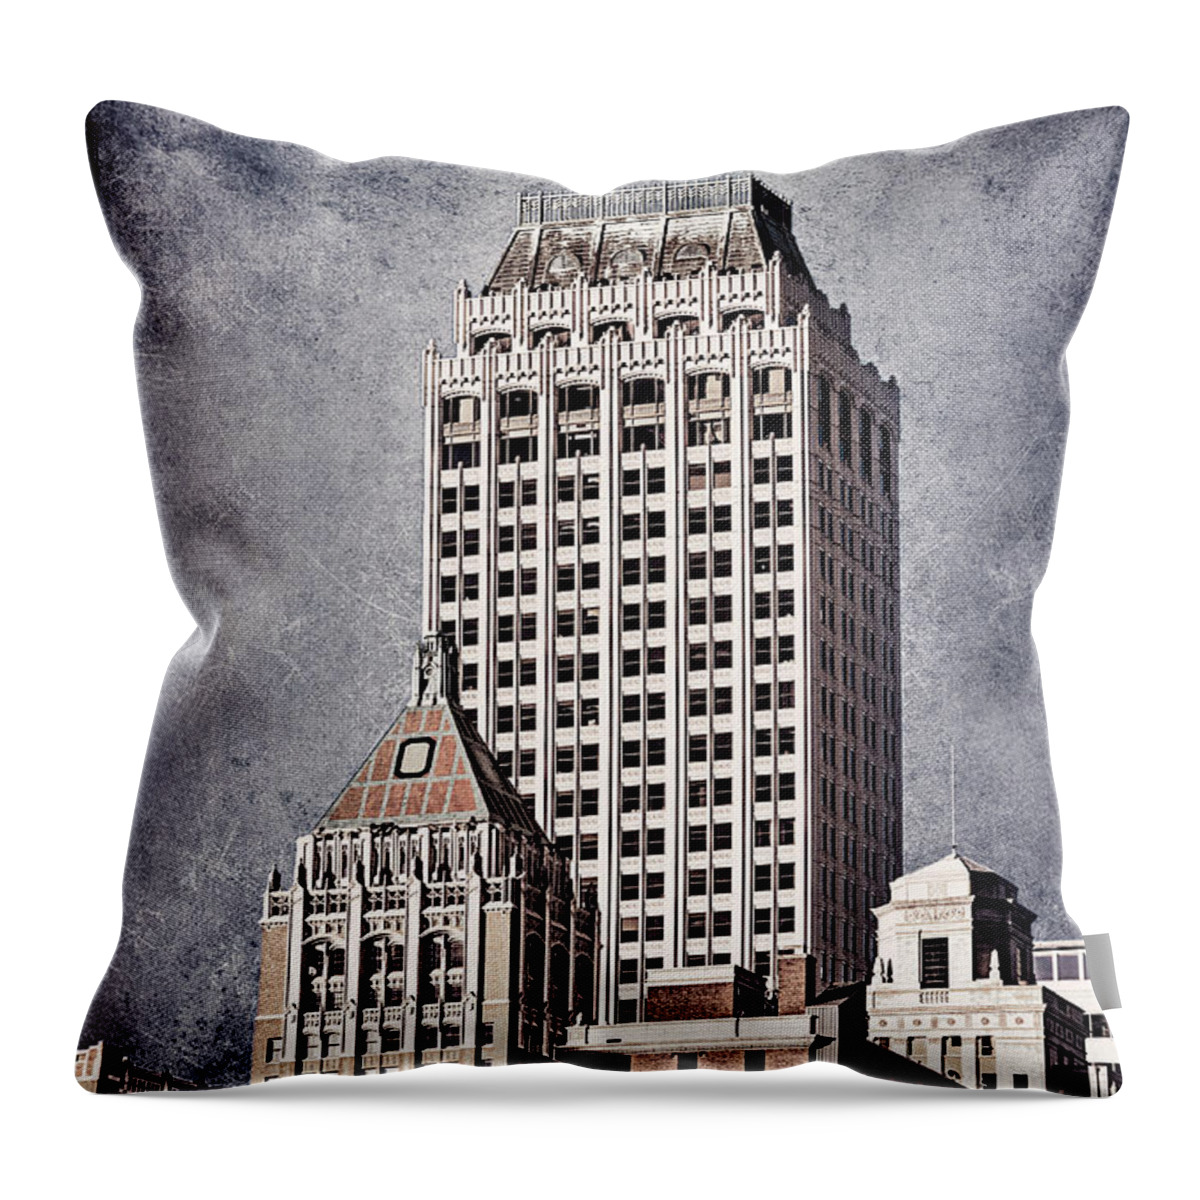 Tulsa Throw Pillow featuring the photograph Tulsa Art Deco I by Tamyra Ayles